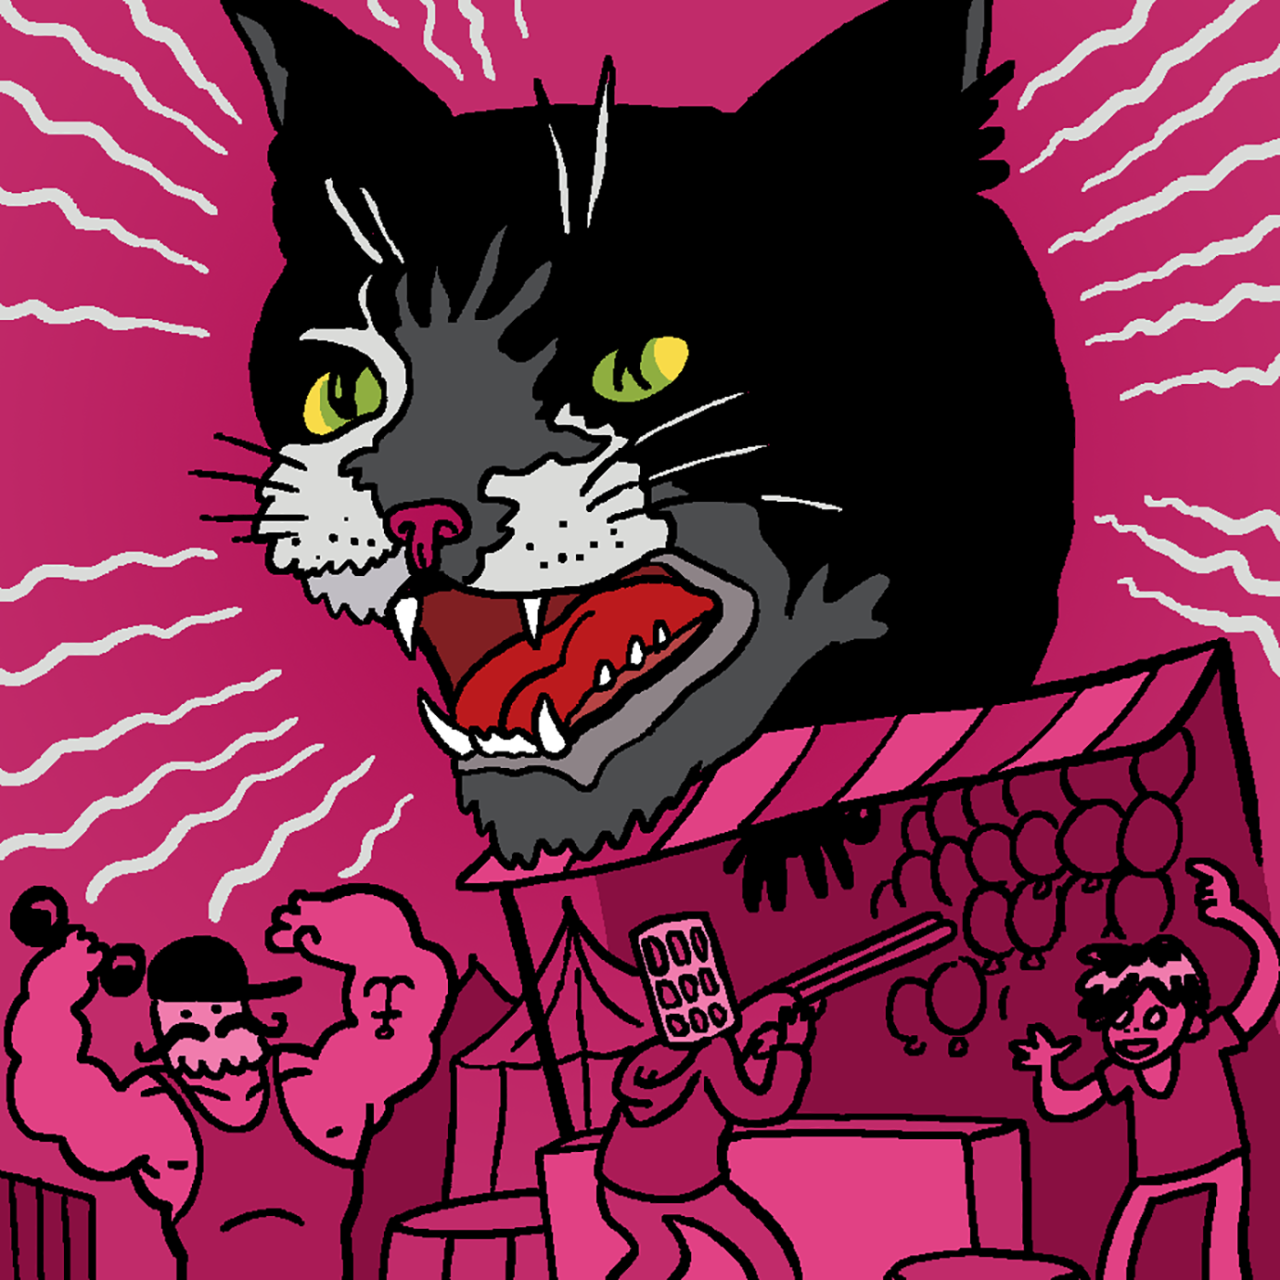 Eine selbst gezeichnete Version des Original-Covers von Folge 4 "Die schwarze Katze". Marcus, Tim und Jeff vergnügen sich an Jahrmarkt-Ständen, über denen der riesige Kopf einer schwarzen Katze thront.